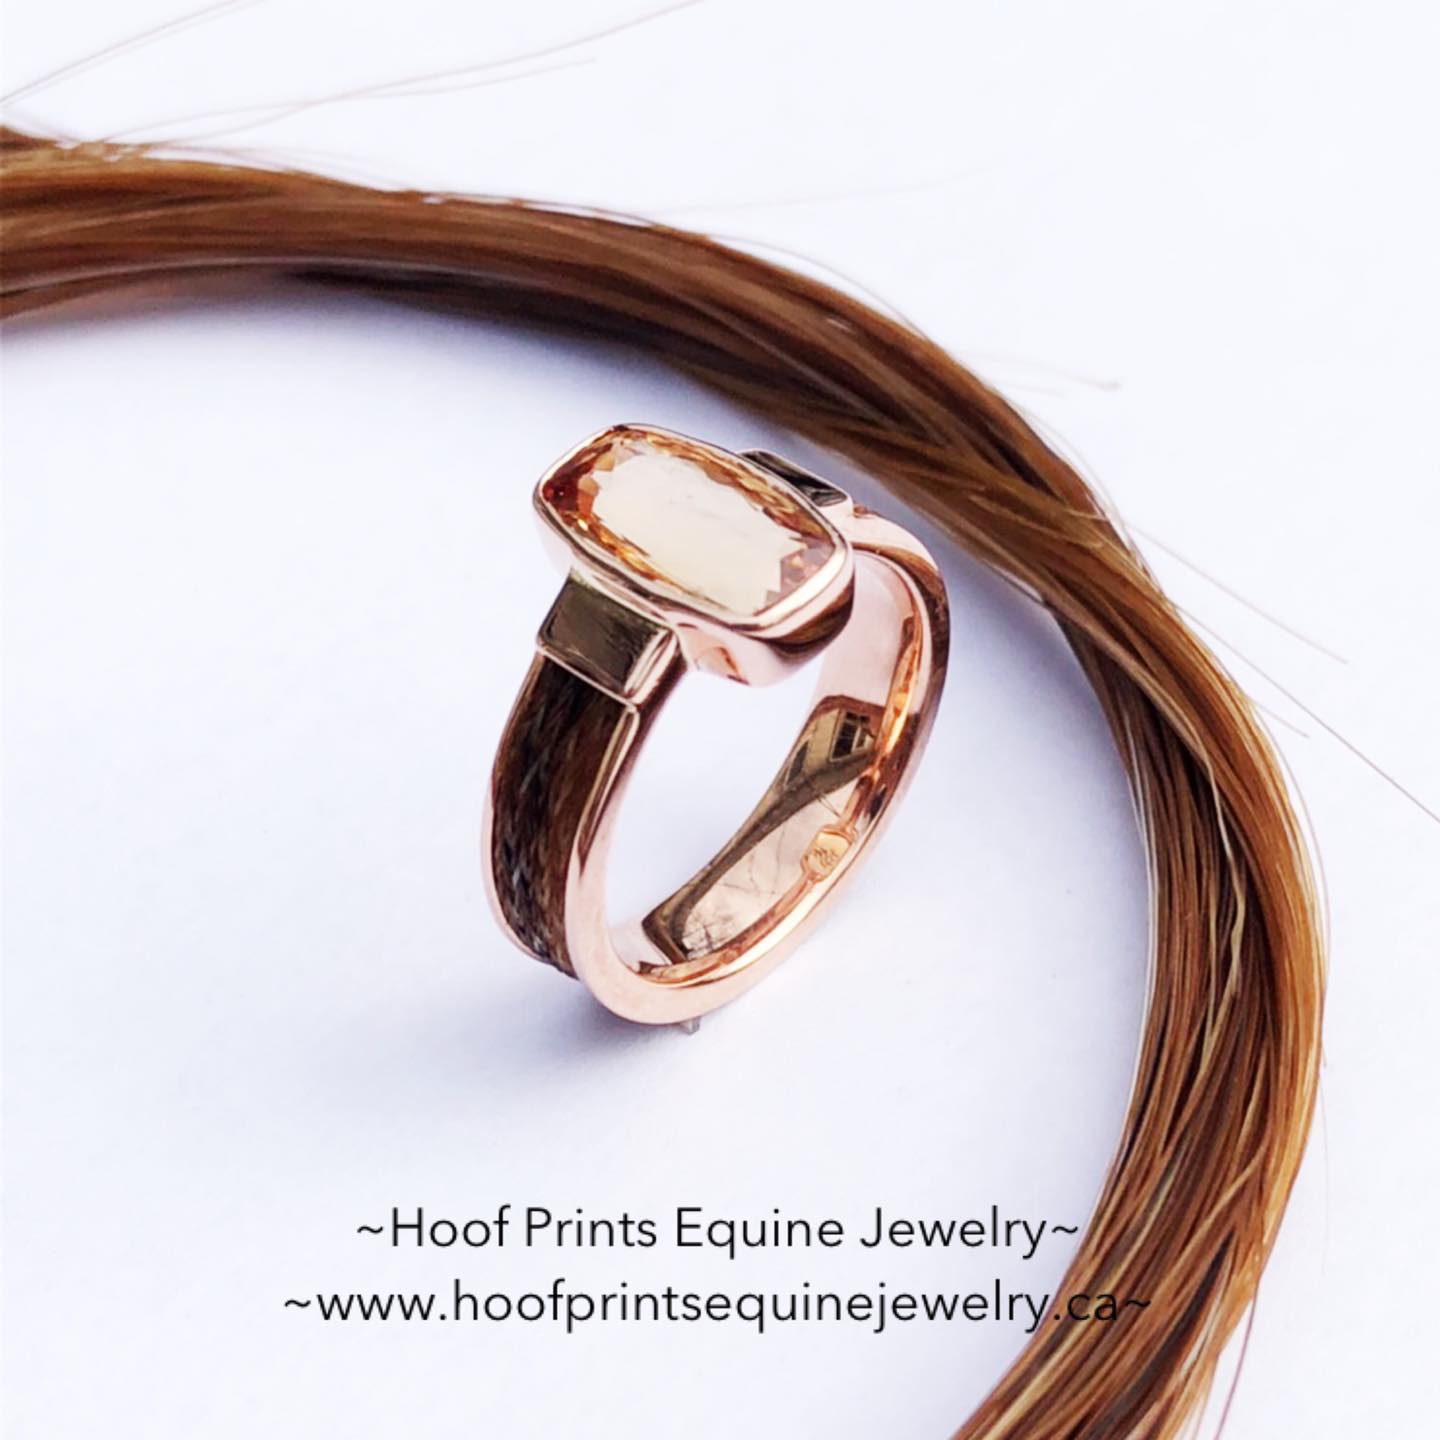 Horse Hair Inlay Ring — More Than A Horse Keepsakes